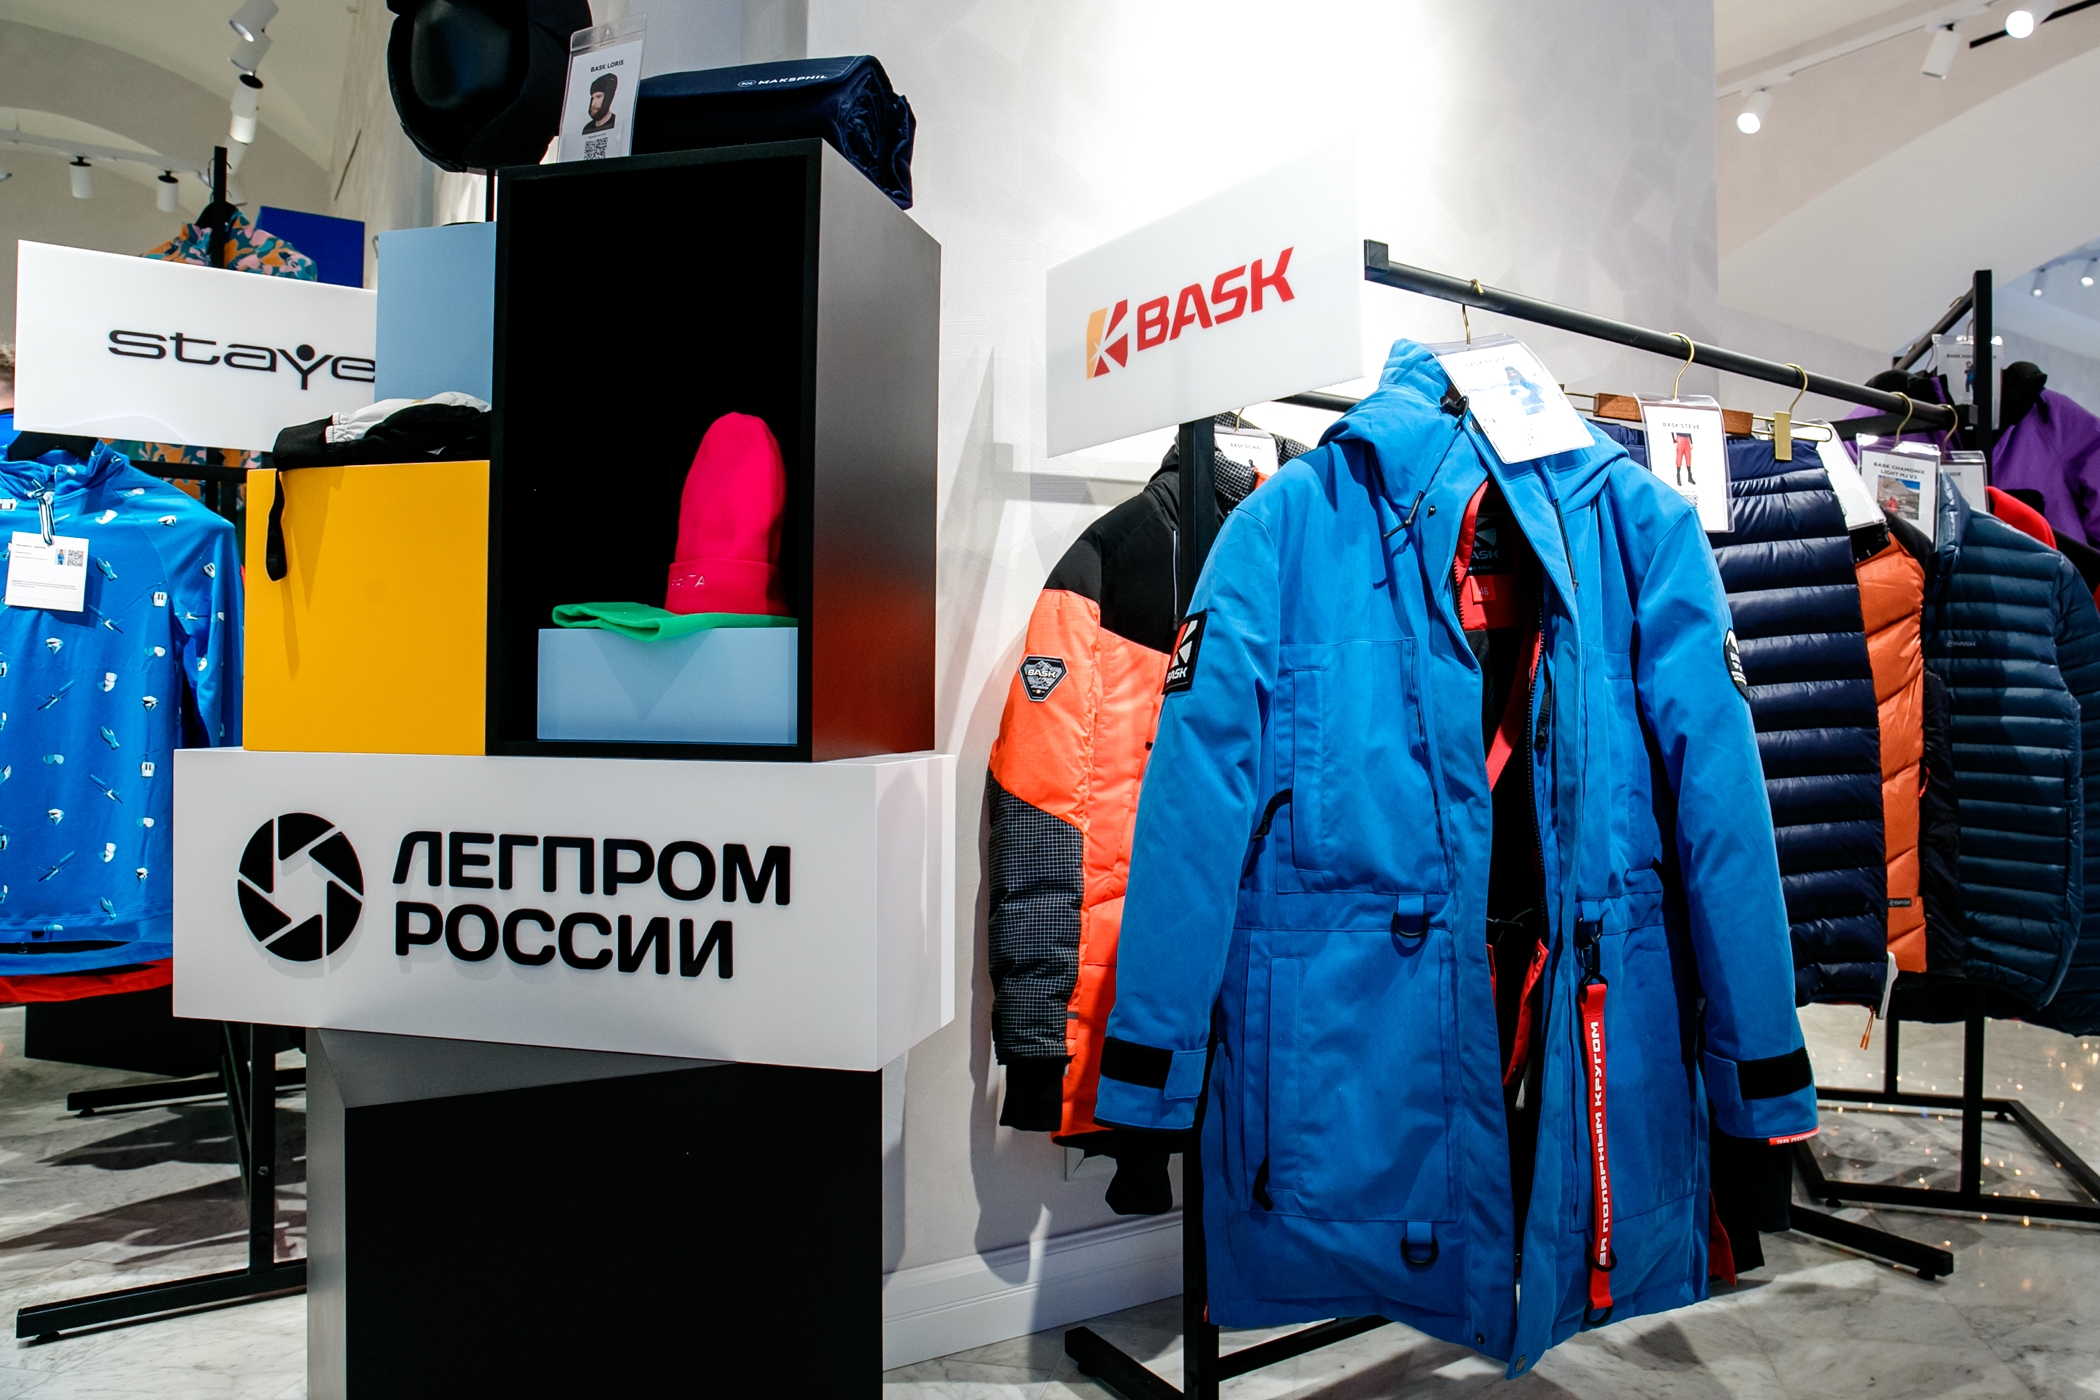 В ГУМе открылась выставка российских производителей экипировки для спорта и активного отдыха